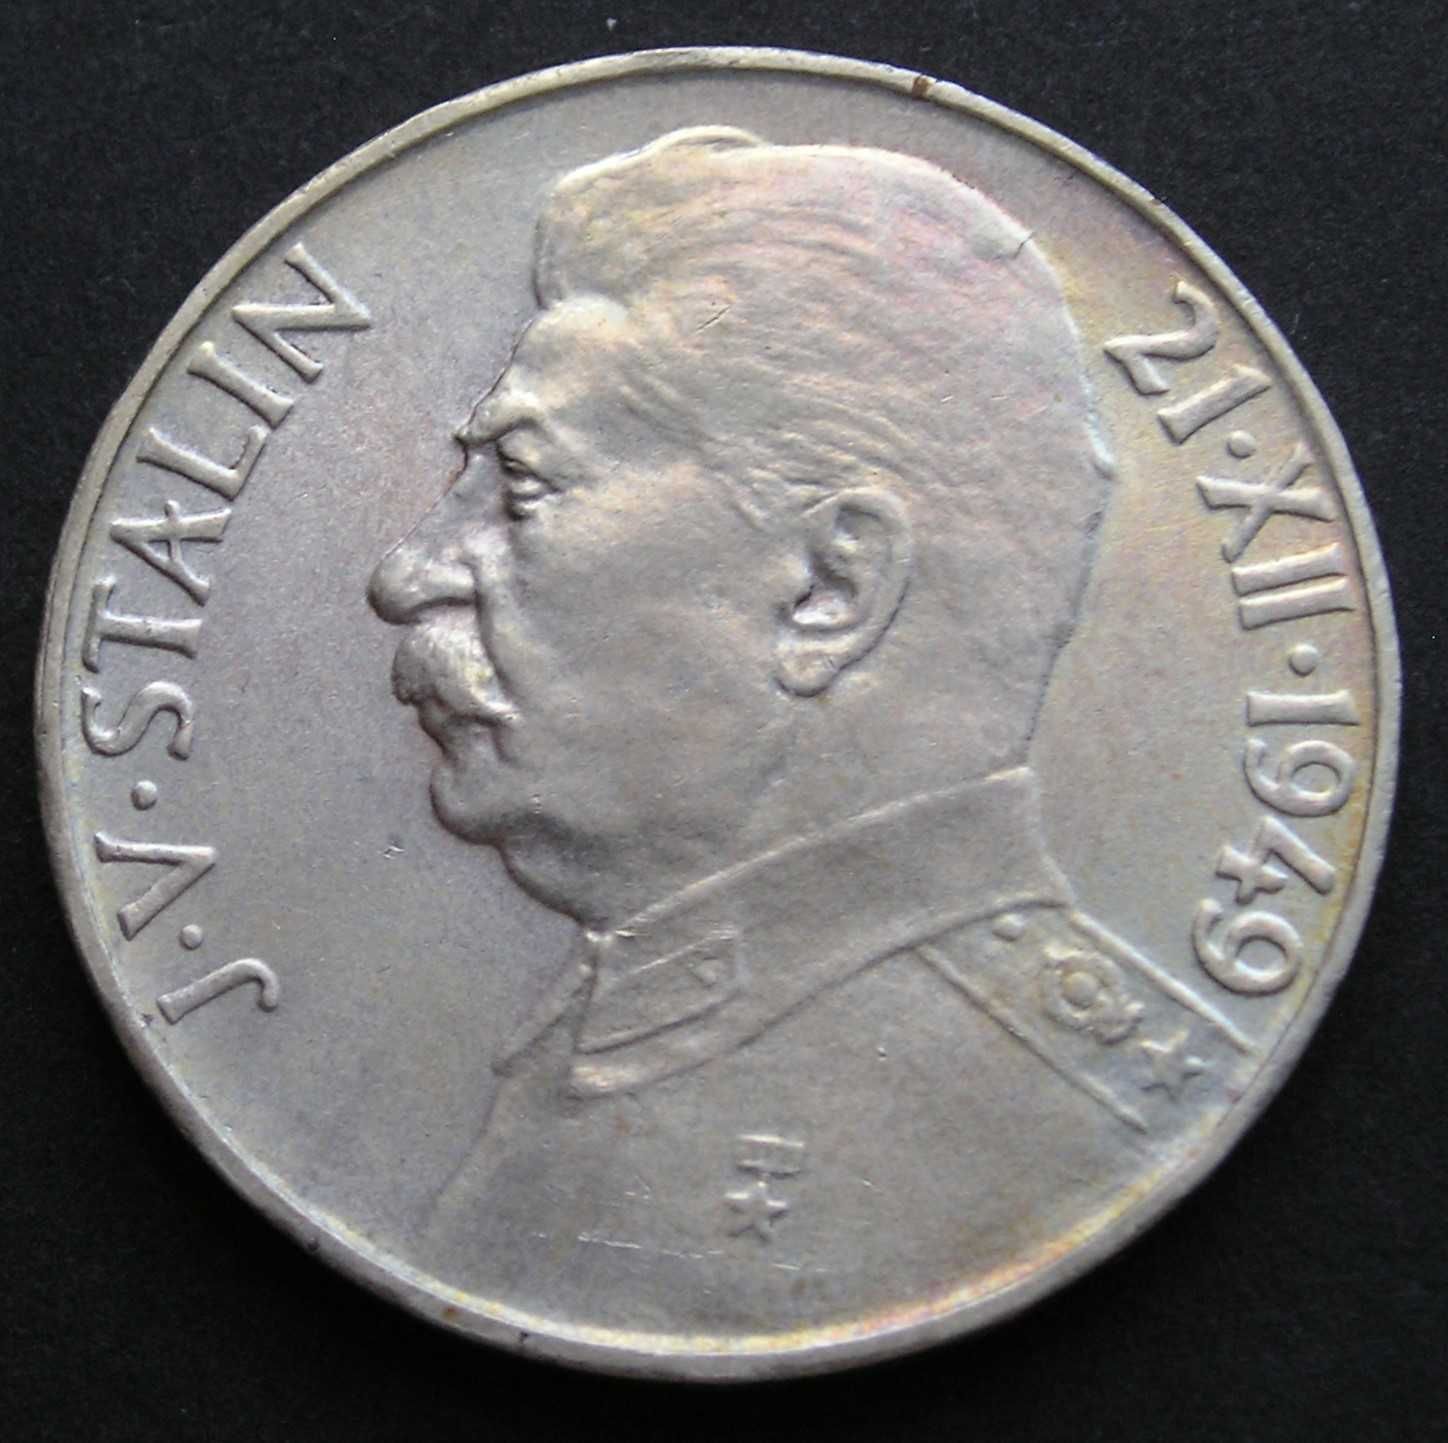 Czechosłowacja 100 koron 1949 - Józef Stalin - srebro